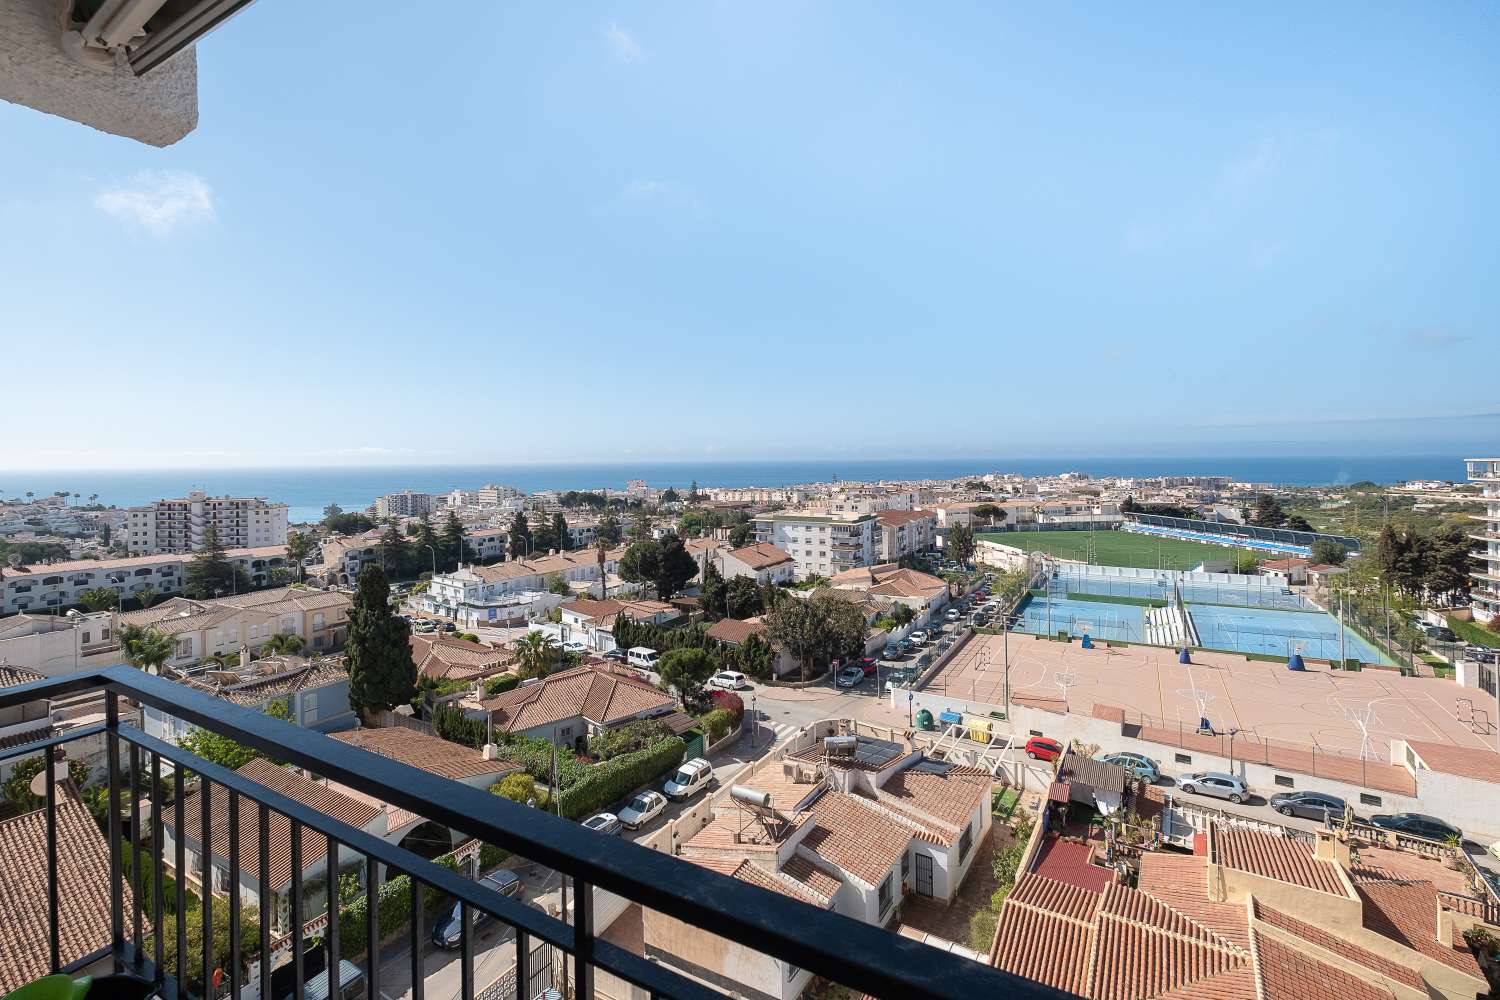 Appartement in Almijara-gebied_Edificio Morasol_Uitzicht op zee